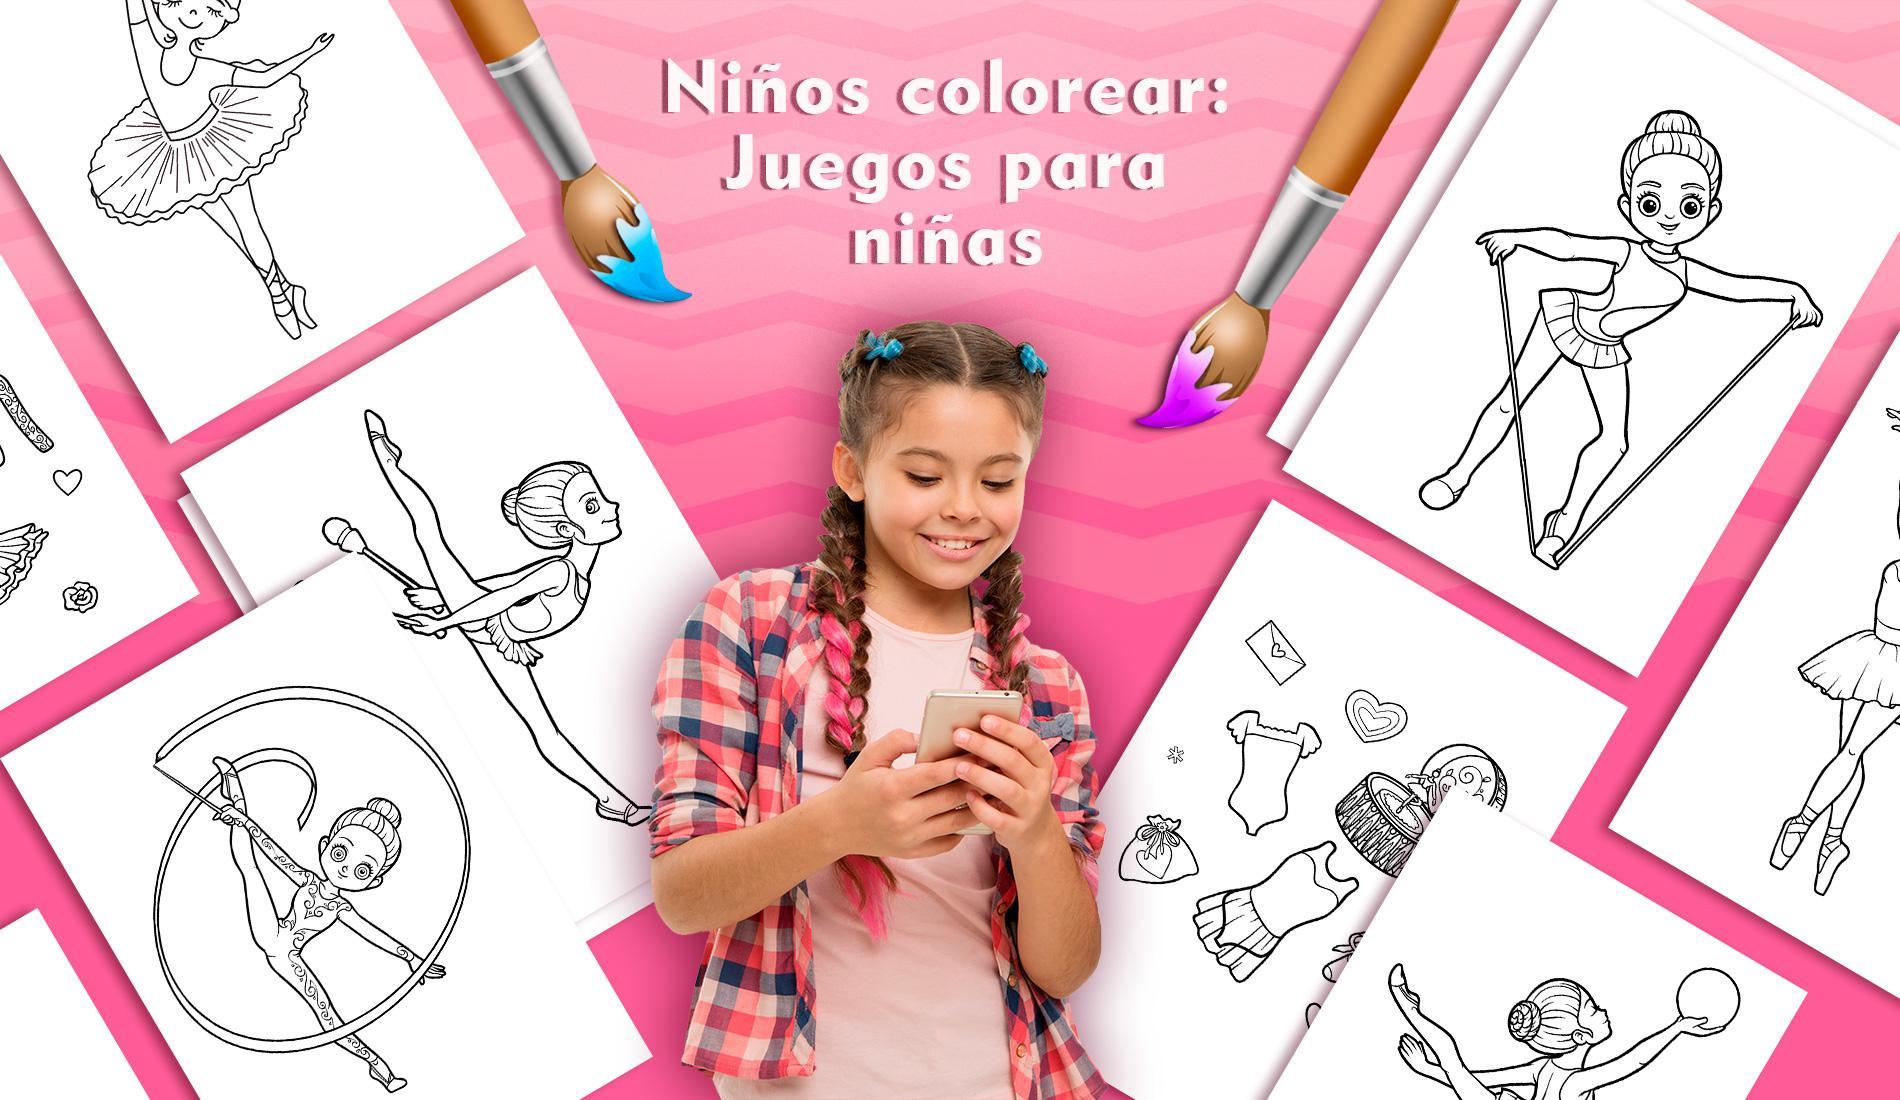 Niños colorear: Juegos para niñas for Android - APK Download